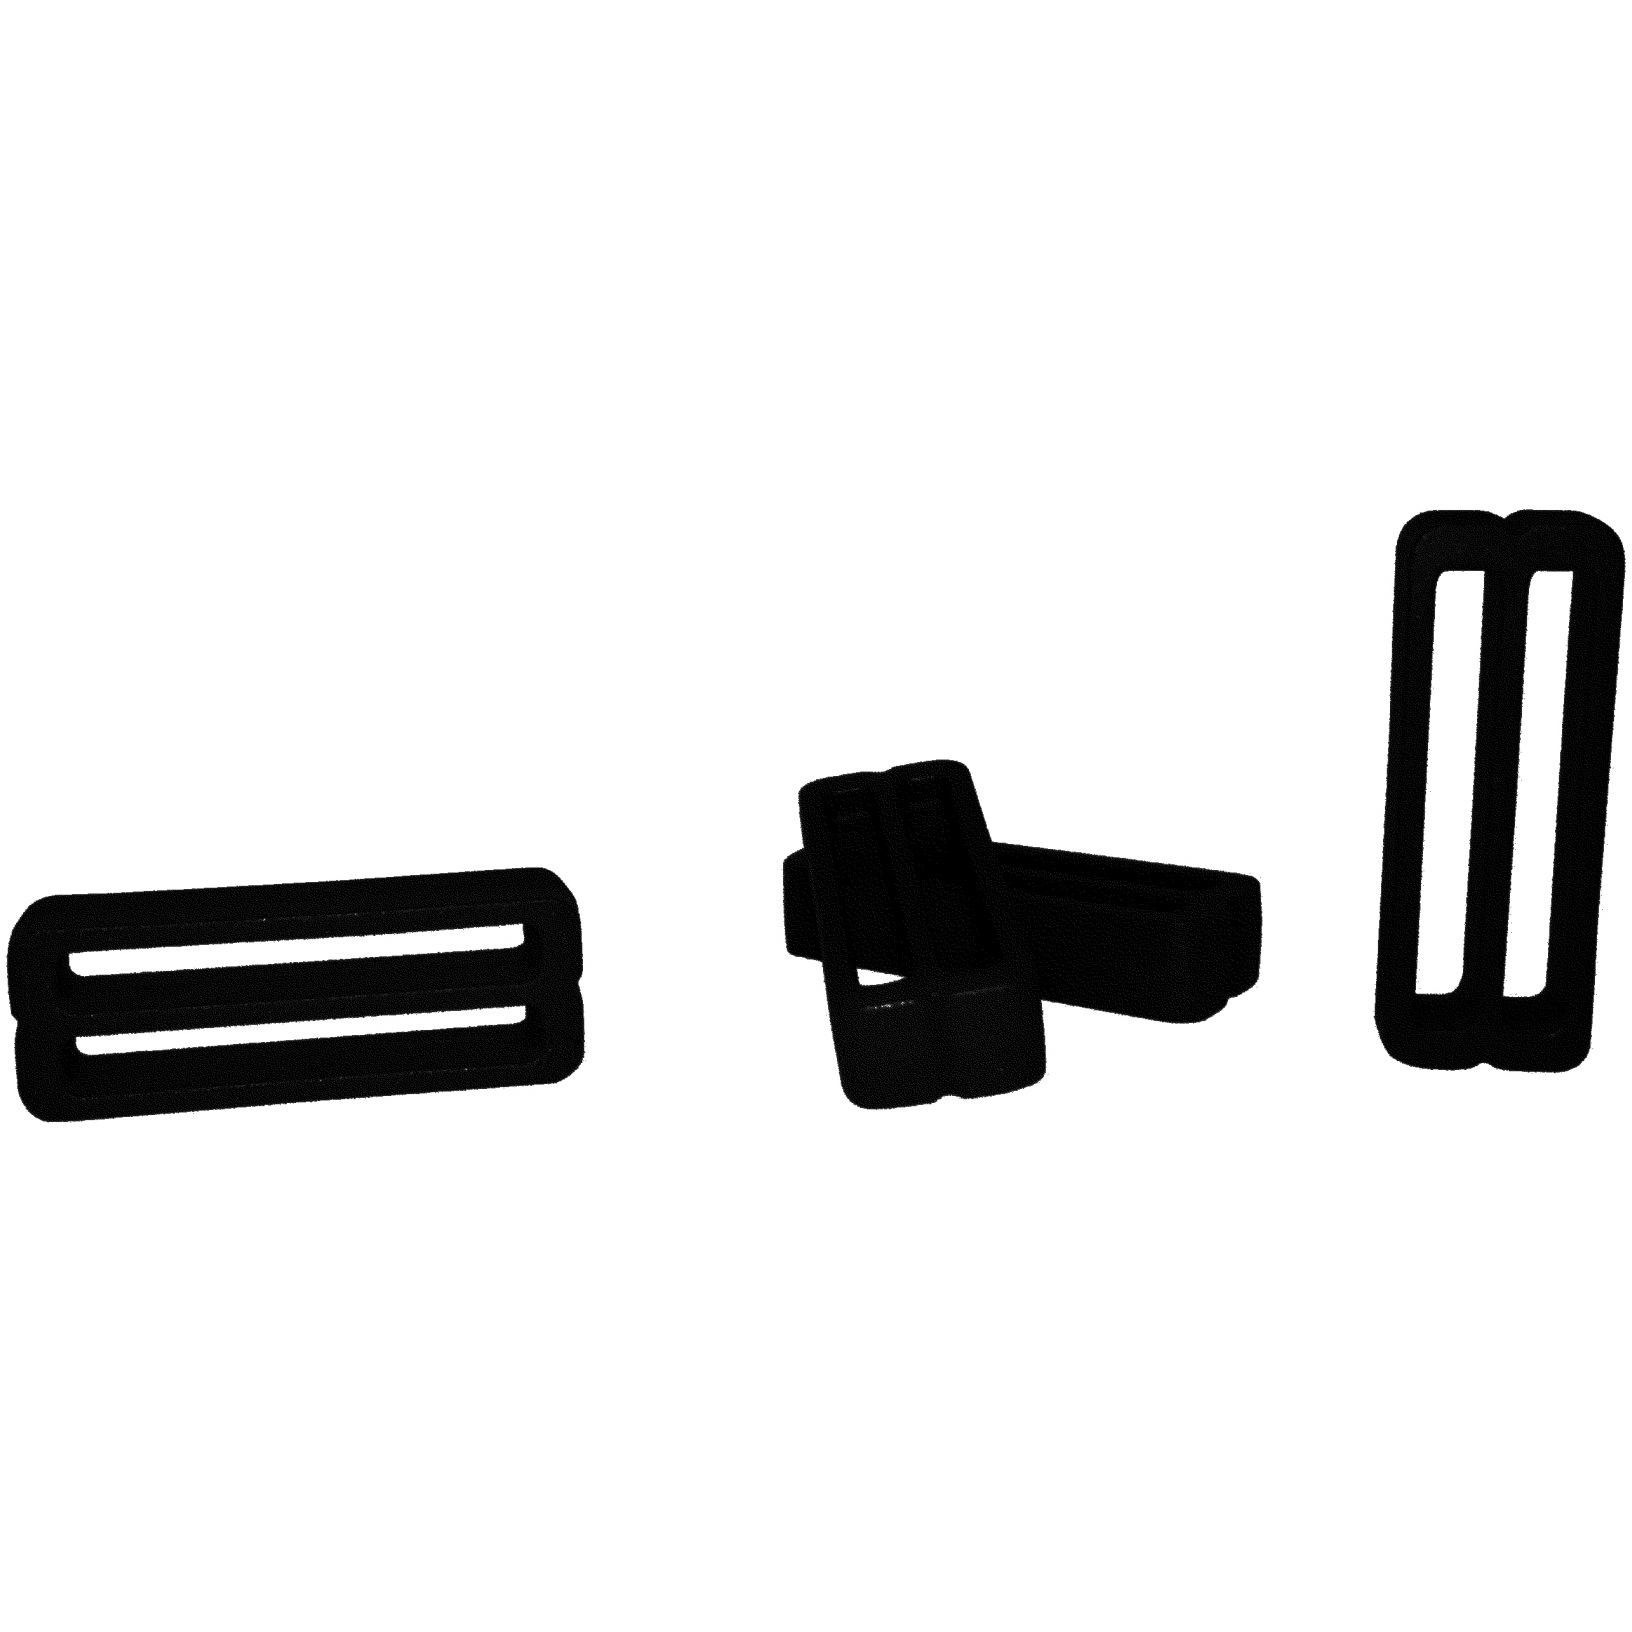 Produktbild von FixPlus Strapkeeper für 35 cm, 46cm &amp; 66cm Straps - 4 Stück - schwarz